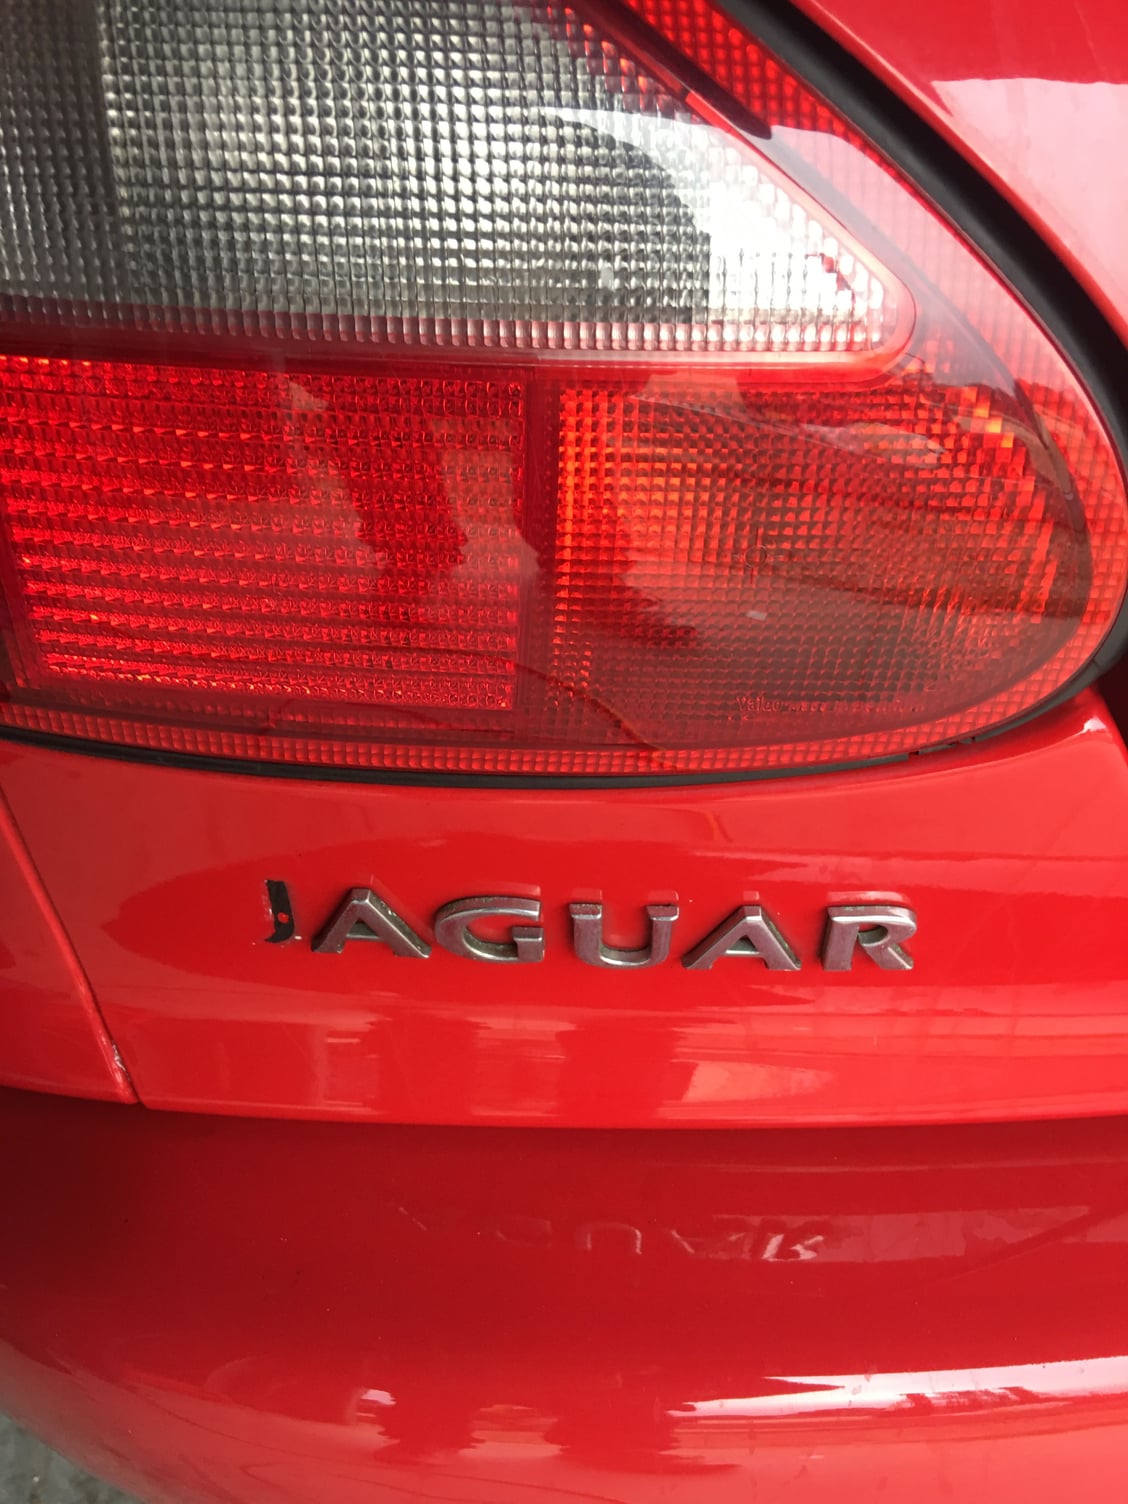 Rear Jaguar emblems for 1998 XKR - RESOLVED - Jaguar Forums - Jaguar